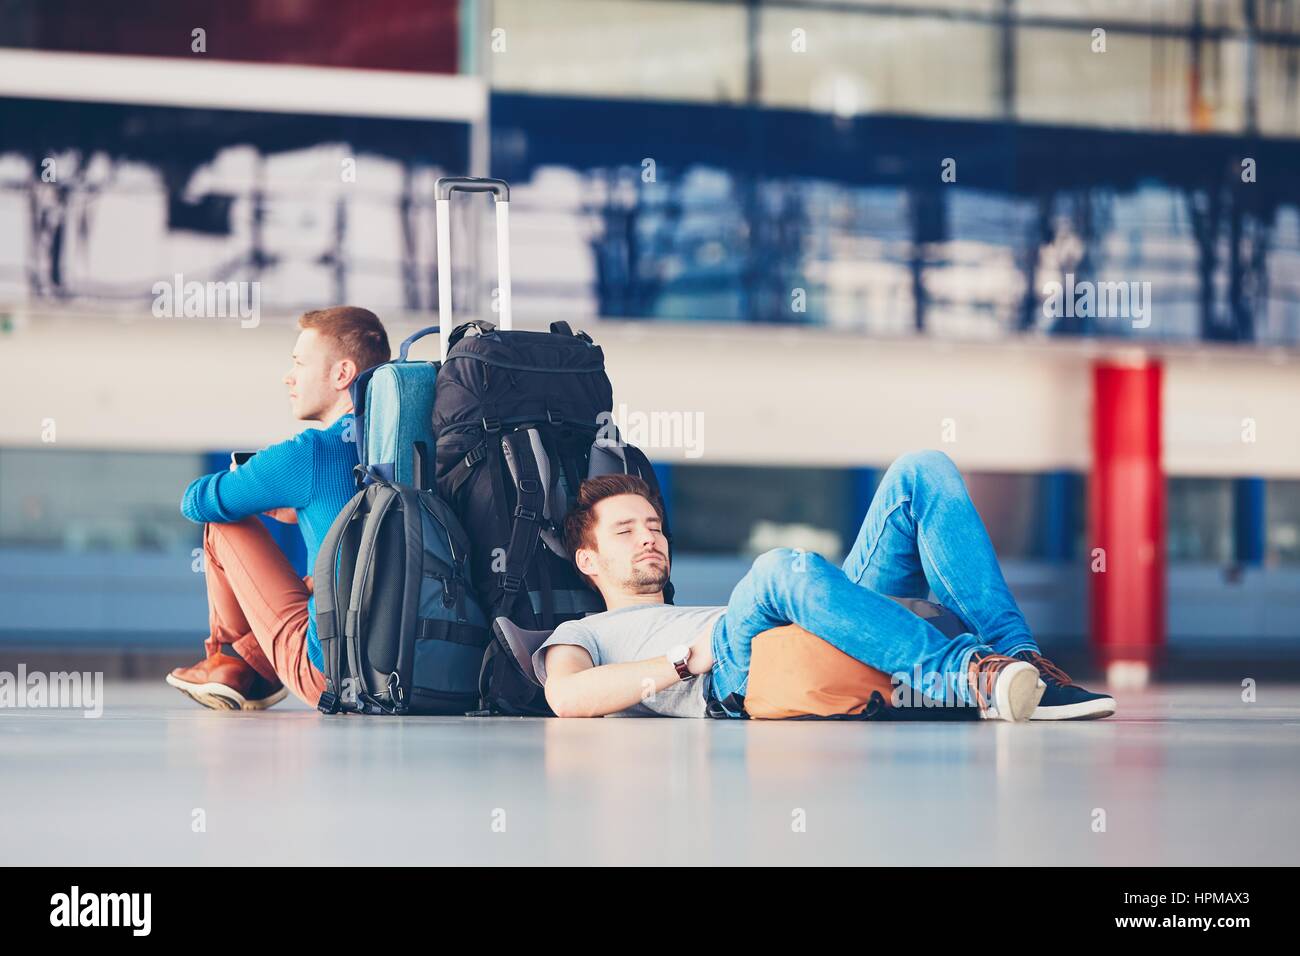 Zwei Freunde, die zusammen reisen. Reisende am Flughafen Abflugbereich für ihre Verspätung Flug warten. Stockfoto